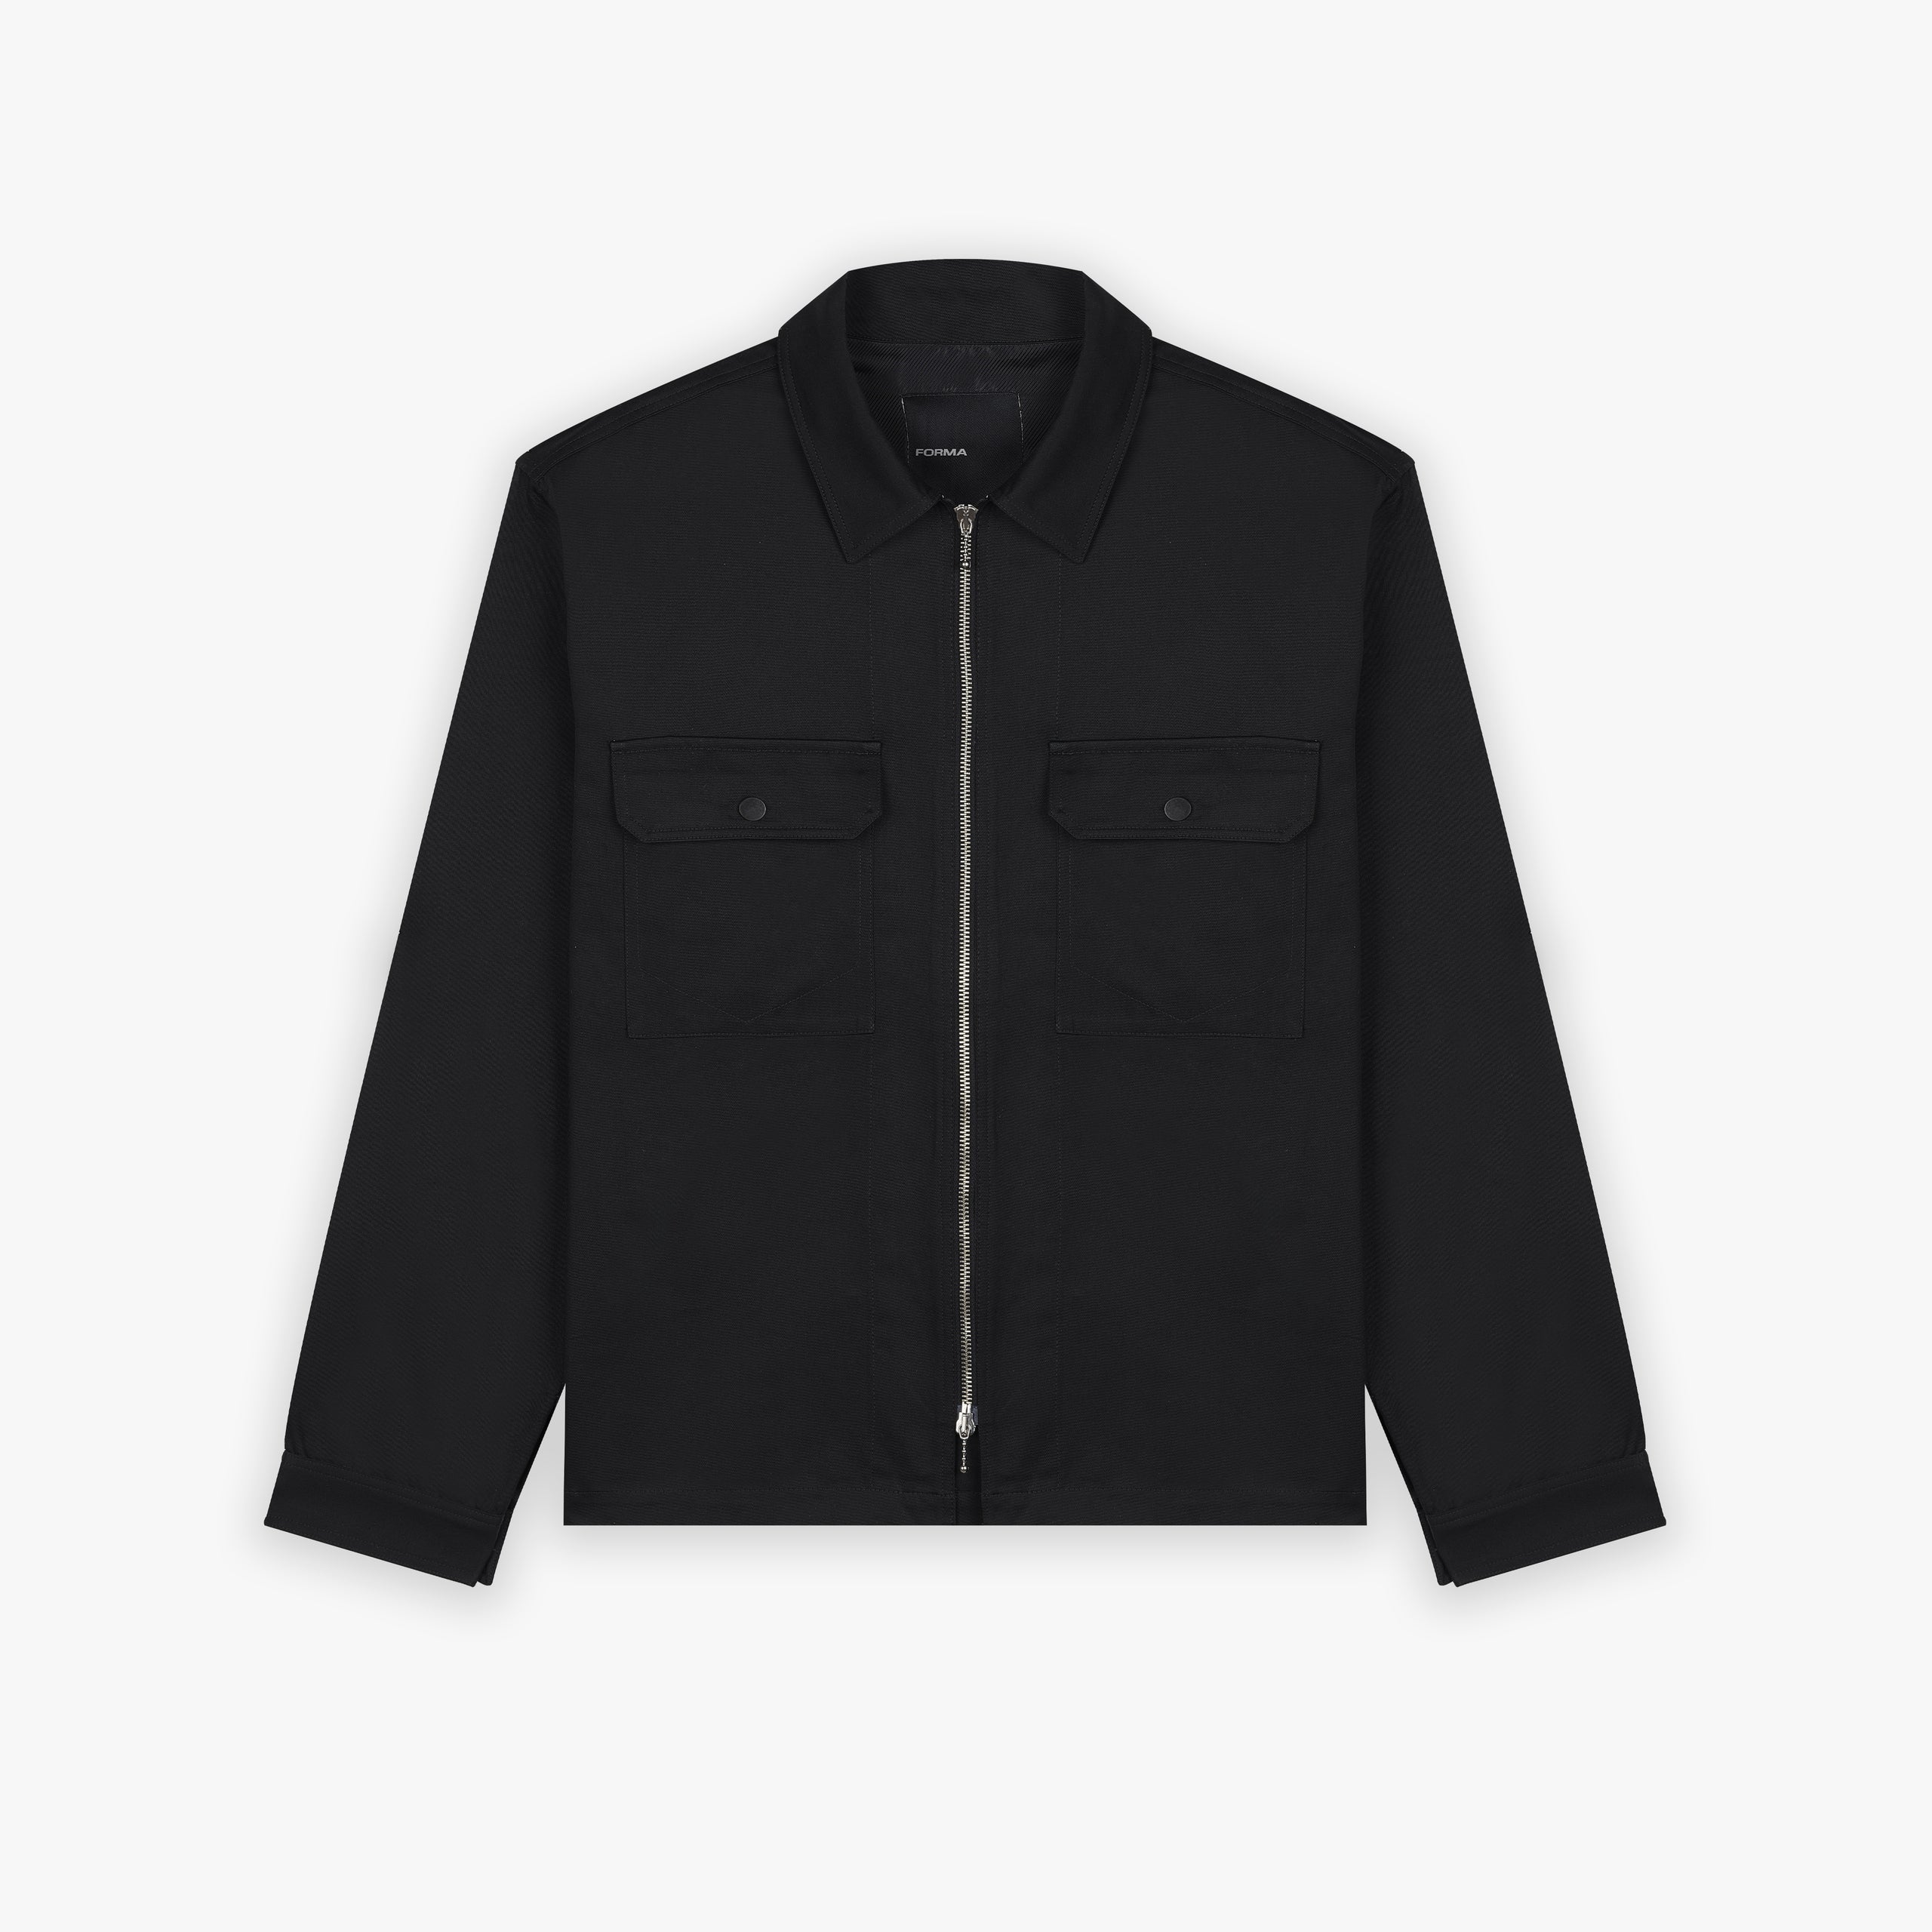 Forma zip Jacket black